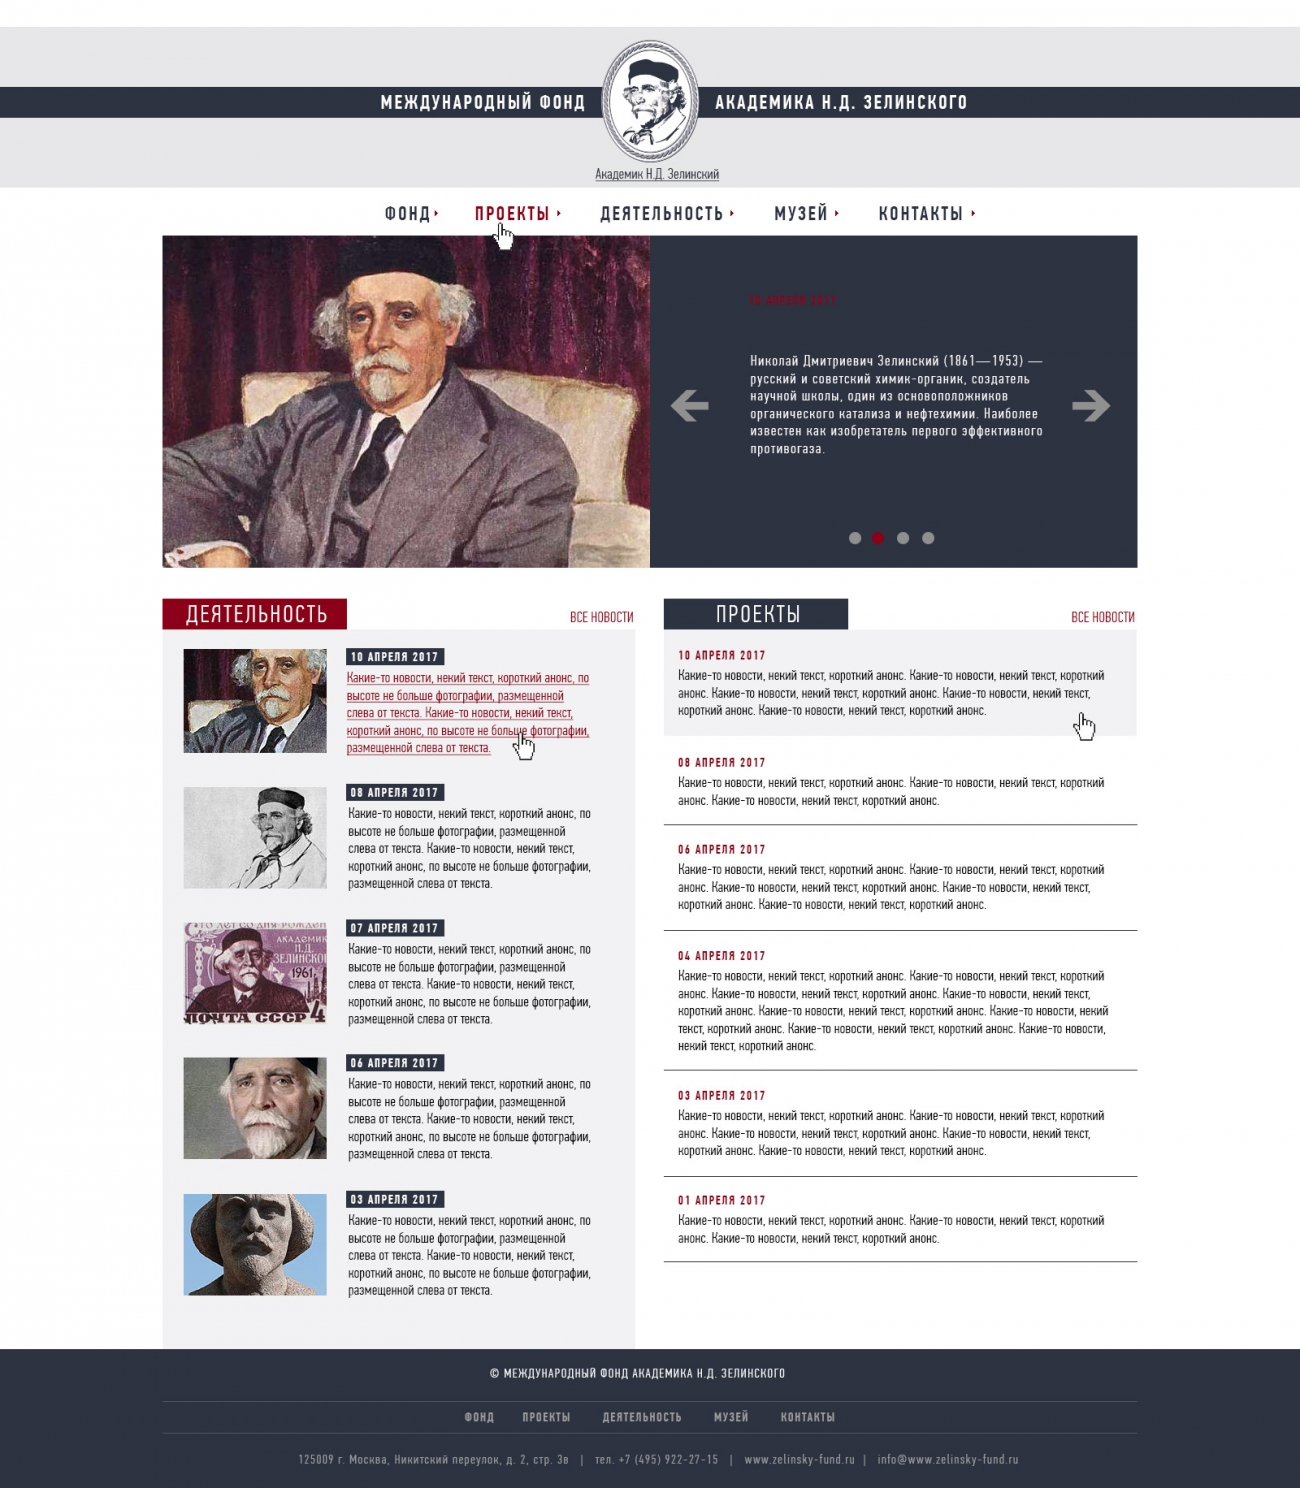 Макет номер 2 главной страницы сайта фонда академика Зелинского